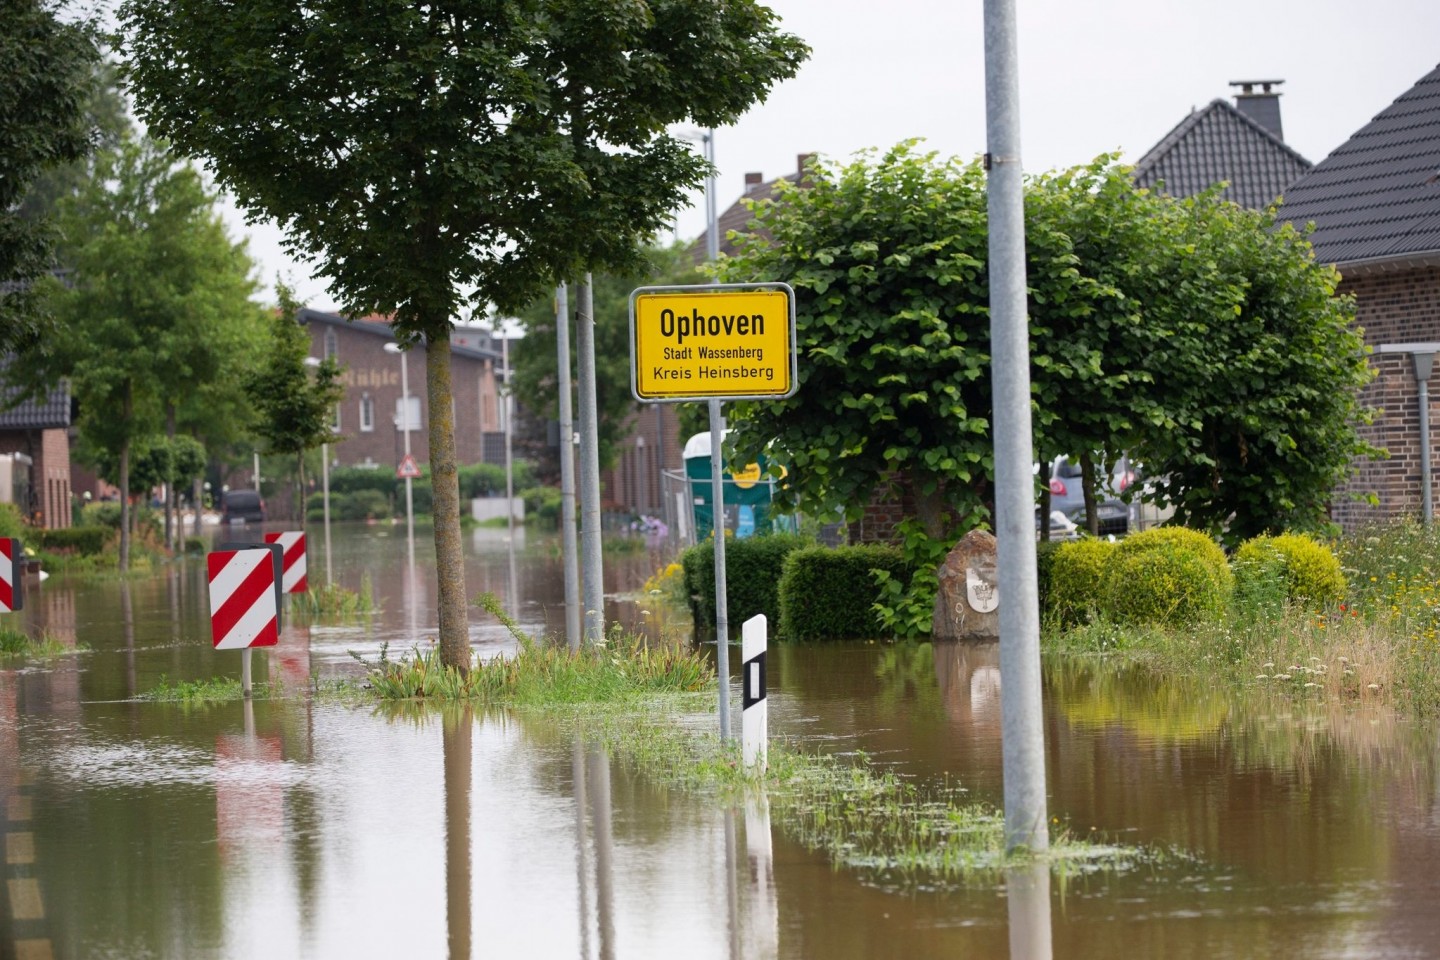 Straßen in Ophoven, einem Stadtteil von Wassenberg (Kreis Heinsberg), sind überflutet. Die niederländischen Behörden haben die Bitte des Bürgermeisters des nordrhein-westfälischen Orts...